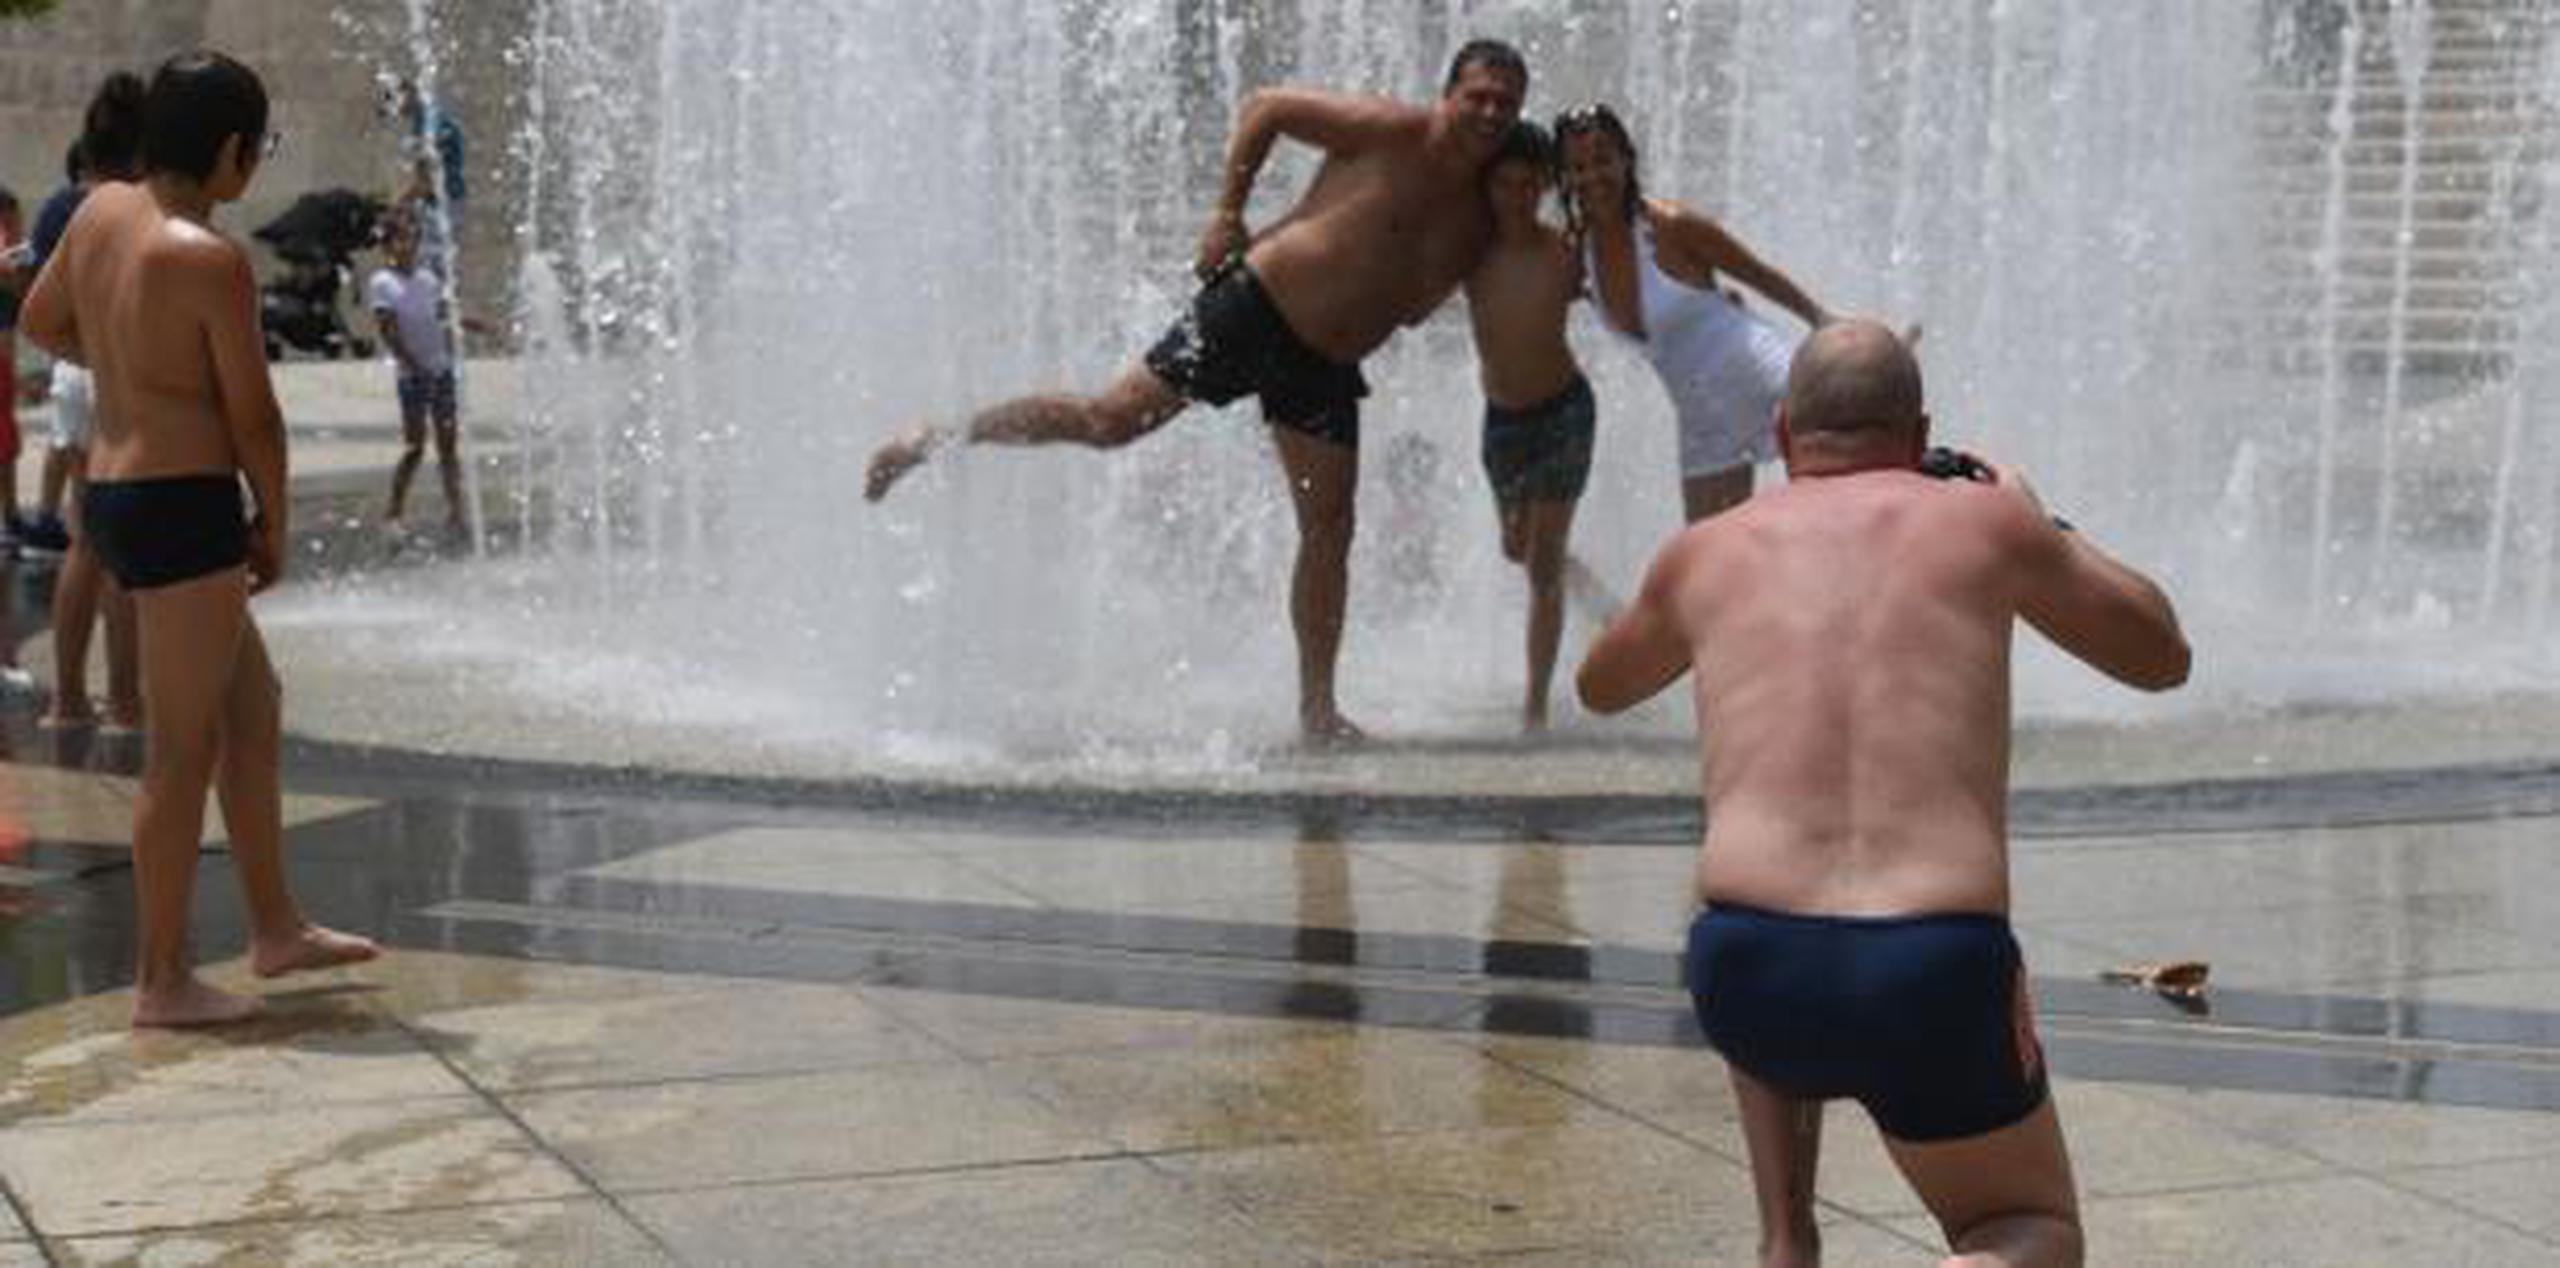 Grandes y pequeños disfrutan de un baño la famosa fuente ubicada en la Plaza del V Centenario. (luis.alcaladelolmo@gfrmedia.com)